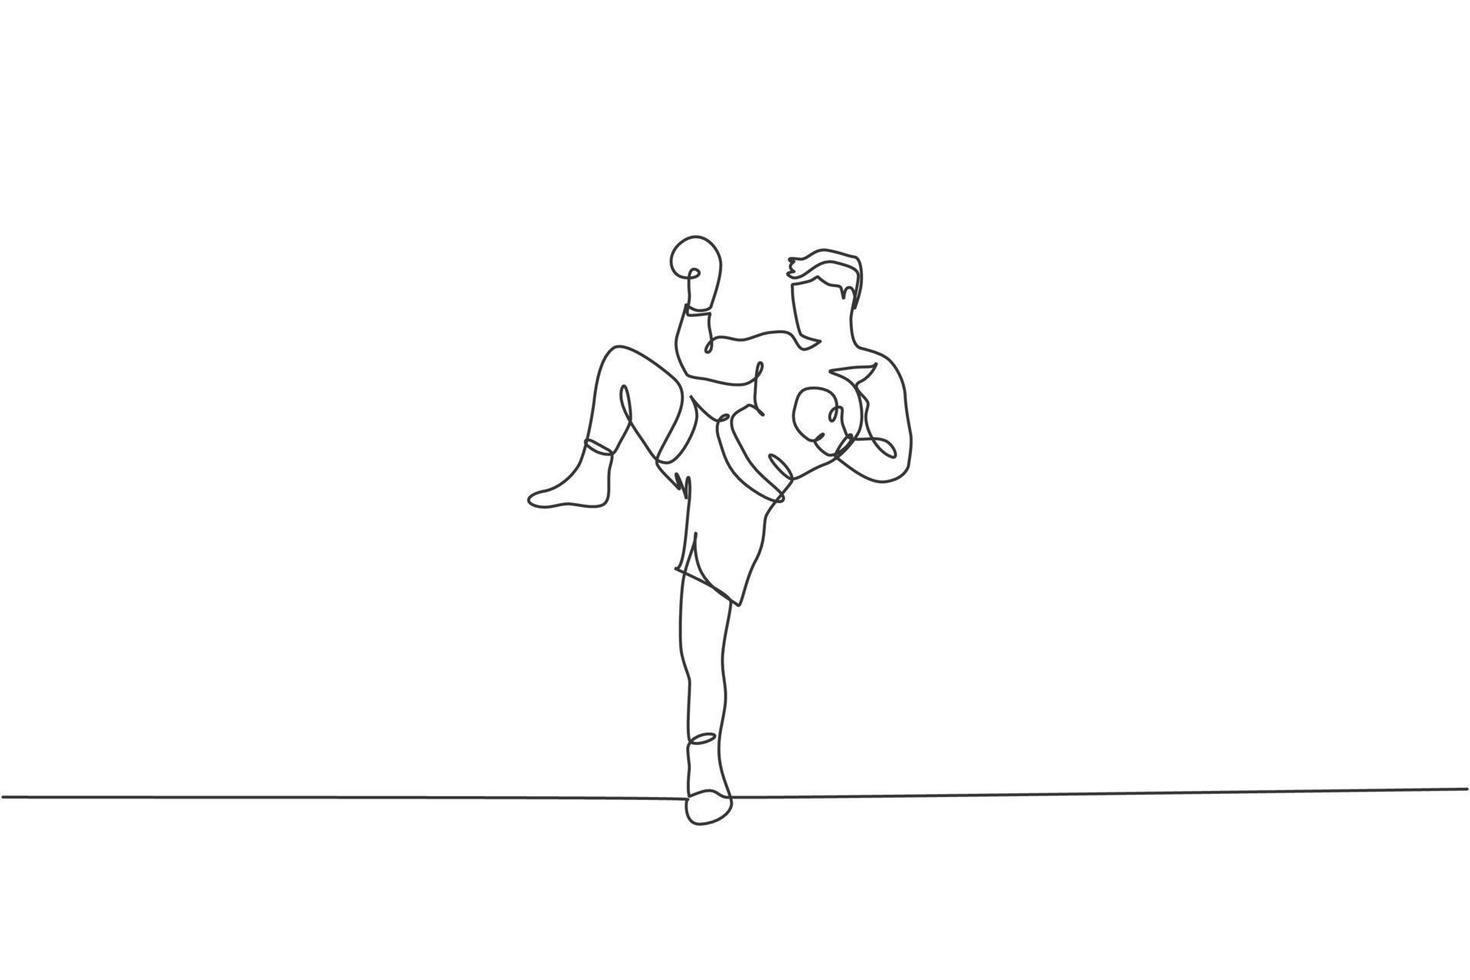 un dibujo de línea continua del joven boxeador muay thai deportivo preparándose para pelear, patada de postura en box arena. concepto de juego de deporte de lucha. Gráfico dinámico de ilustración vectorial de diseño de dibujo de una sola línea vector